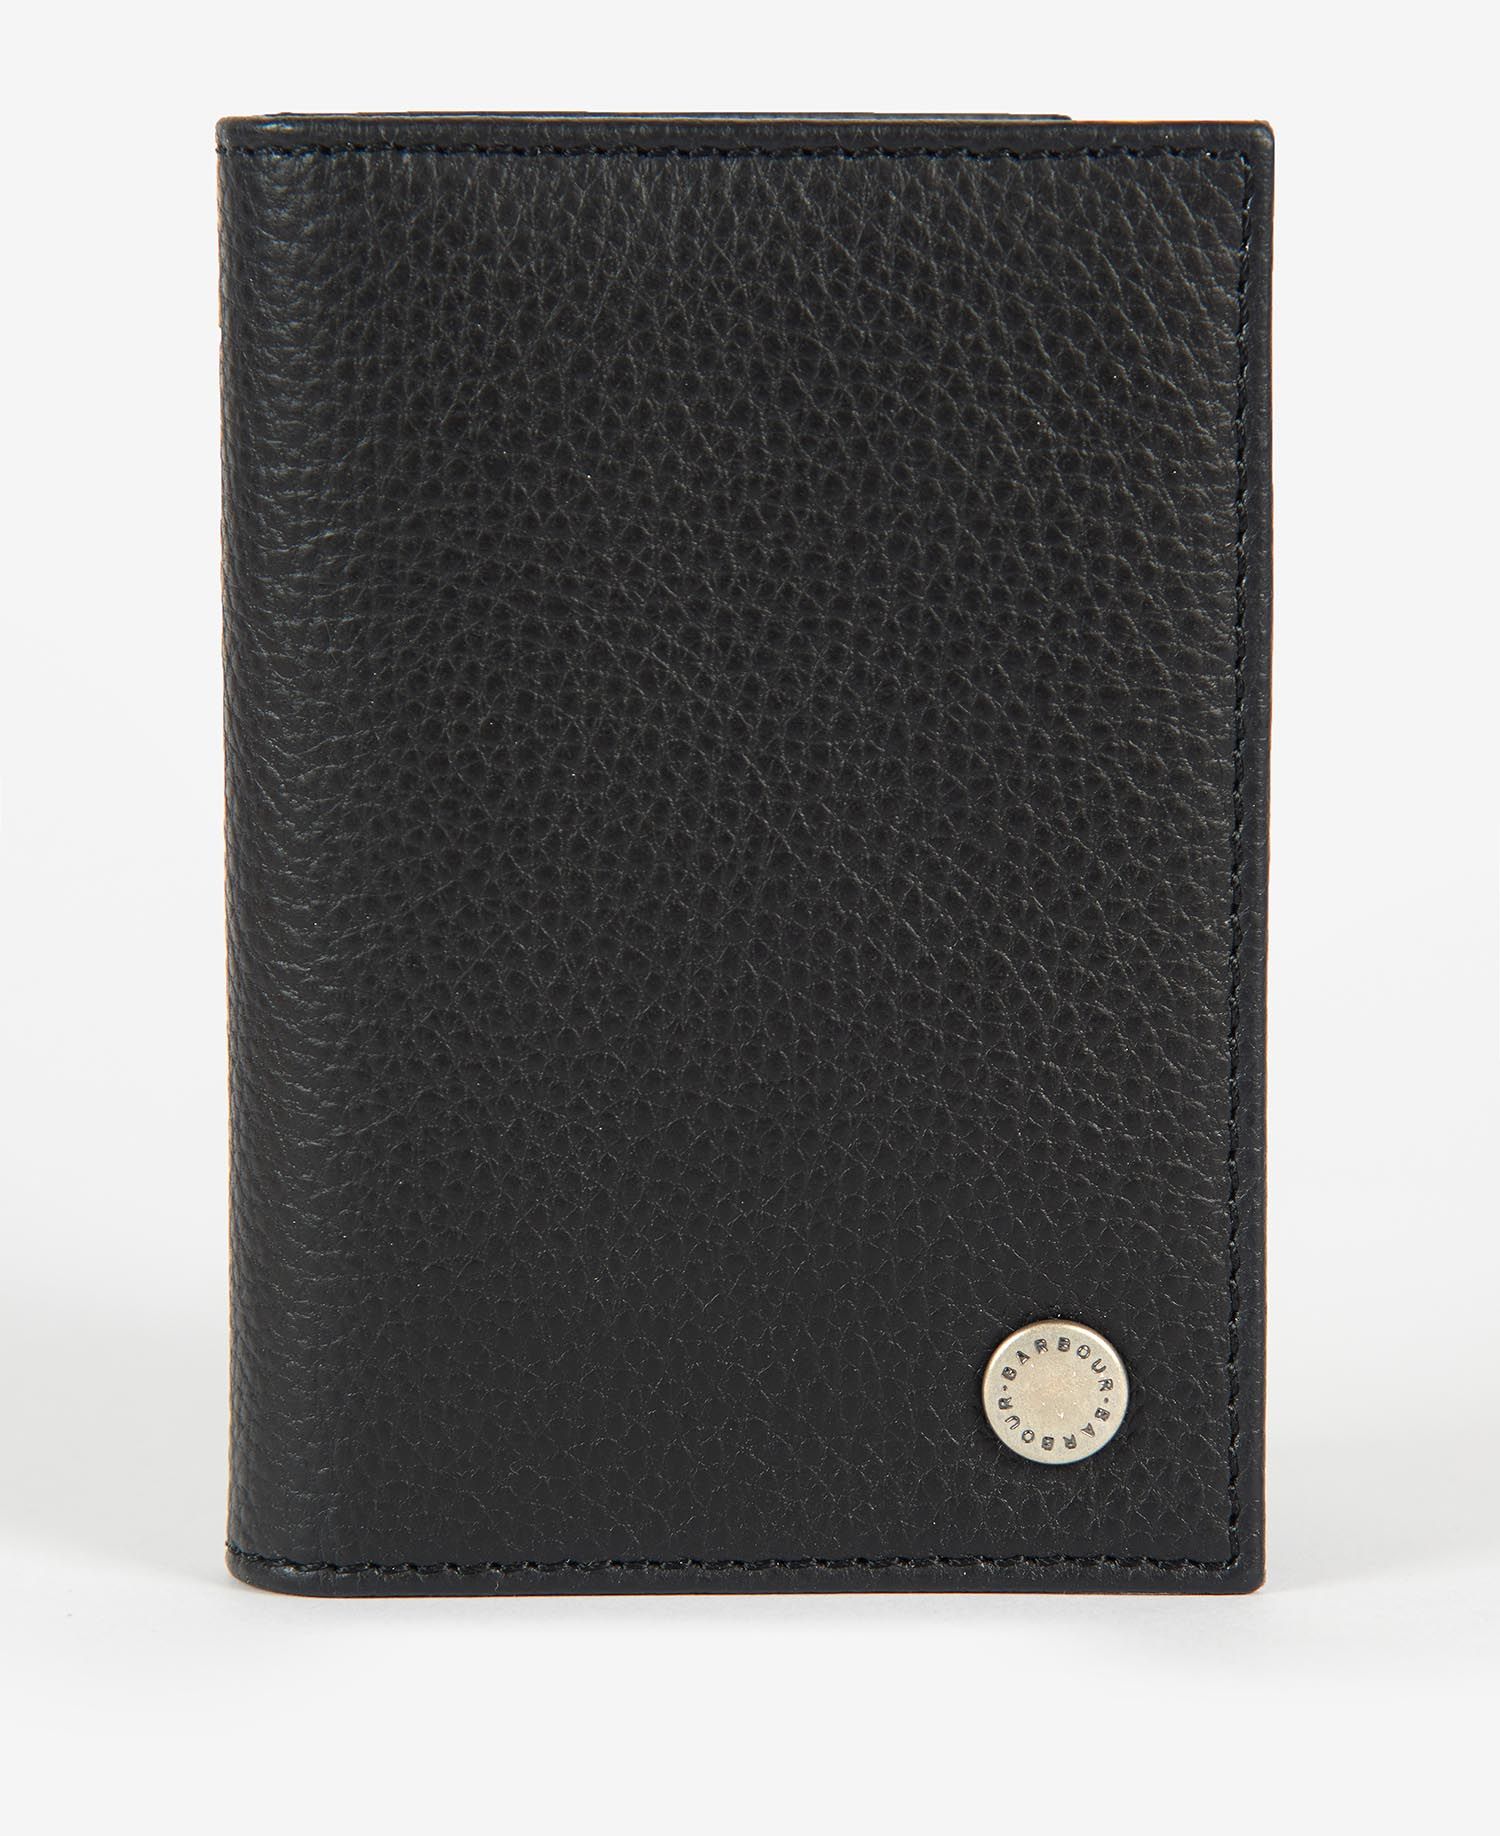 Barbour Leather Billfold Wallet Black